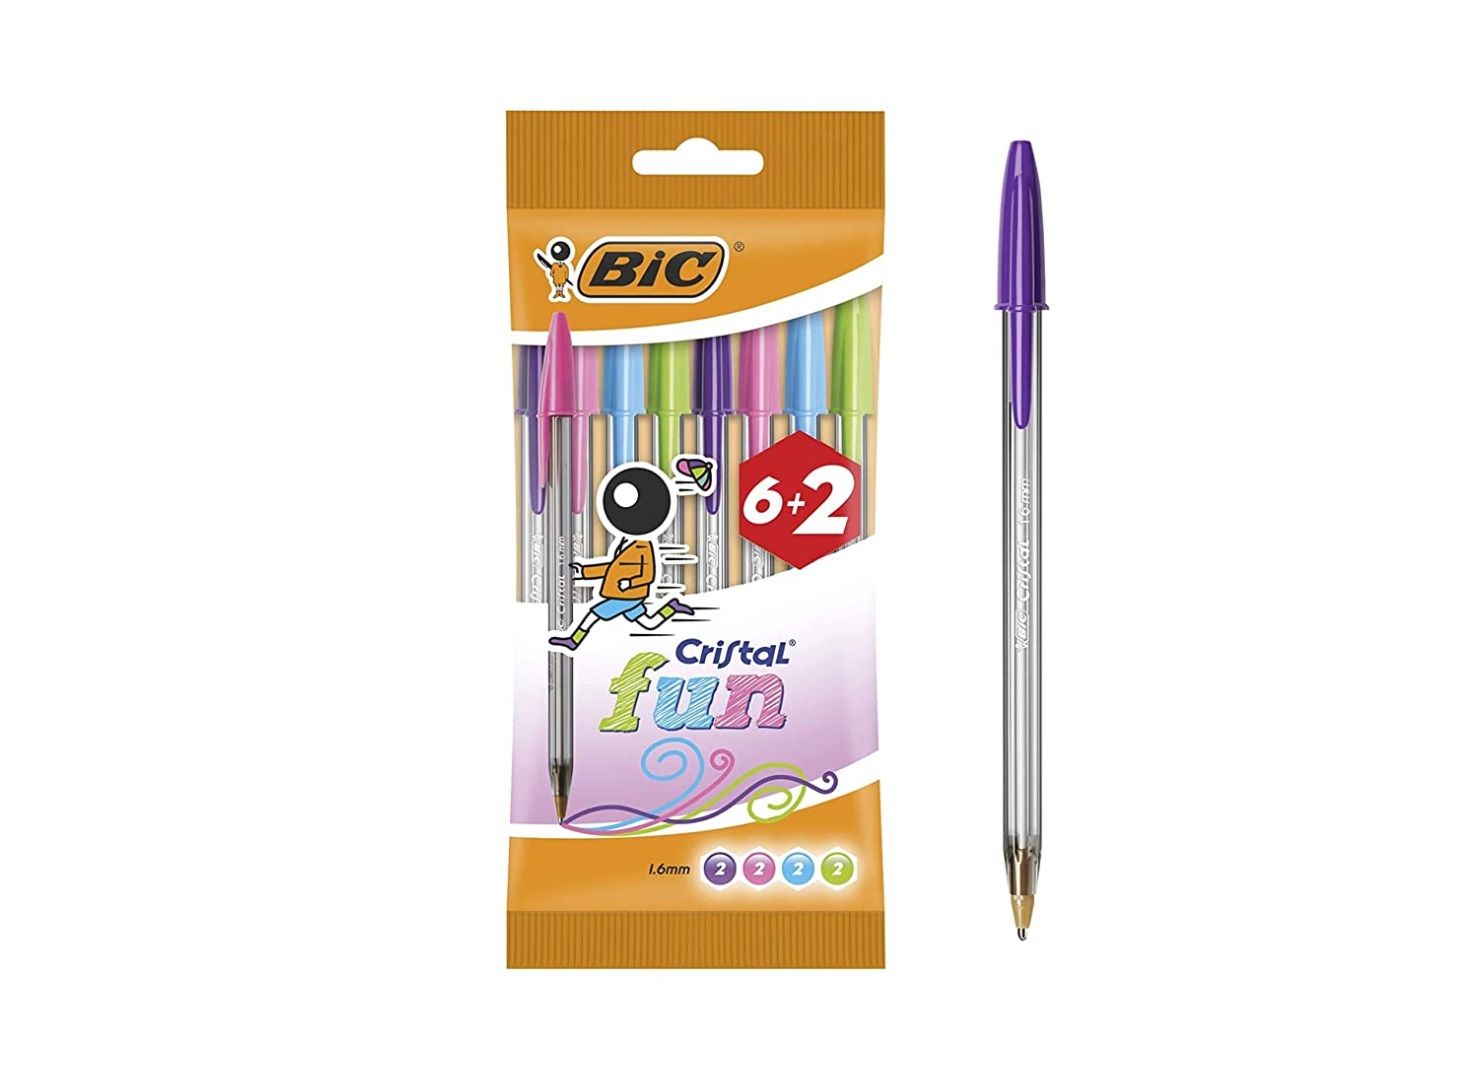 ¡Chollo! Pack 8 bolígrafos BIC Cristal fun por sólo 2,18€ al tramitar el pedido